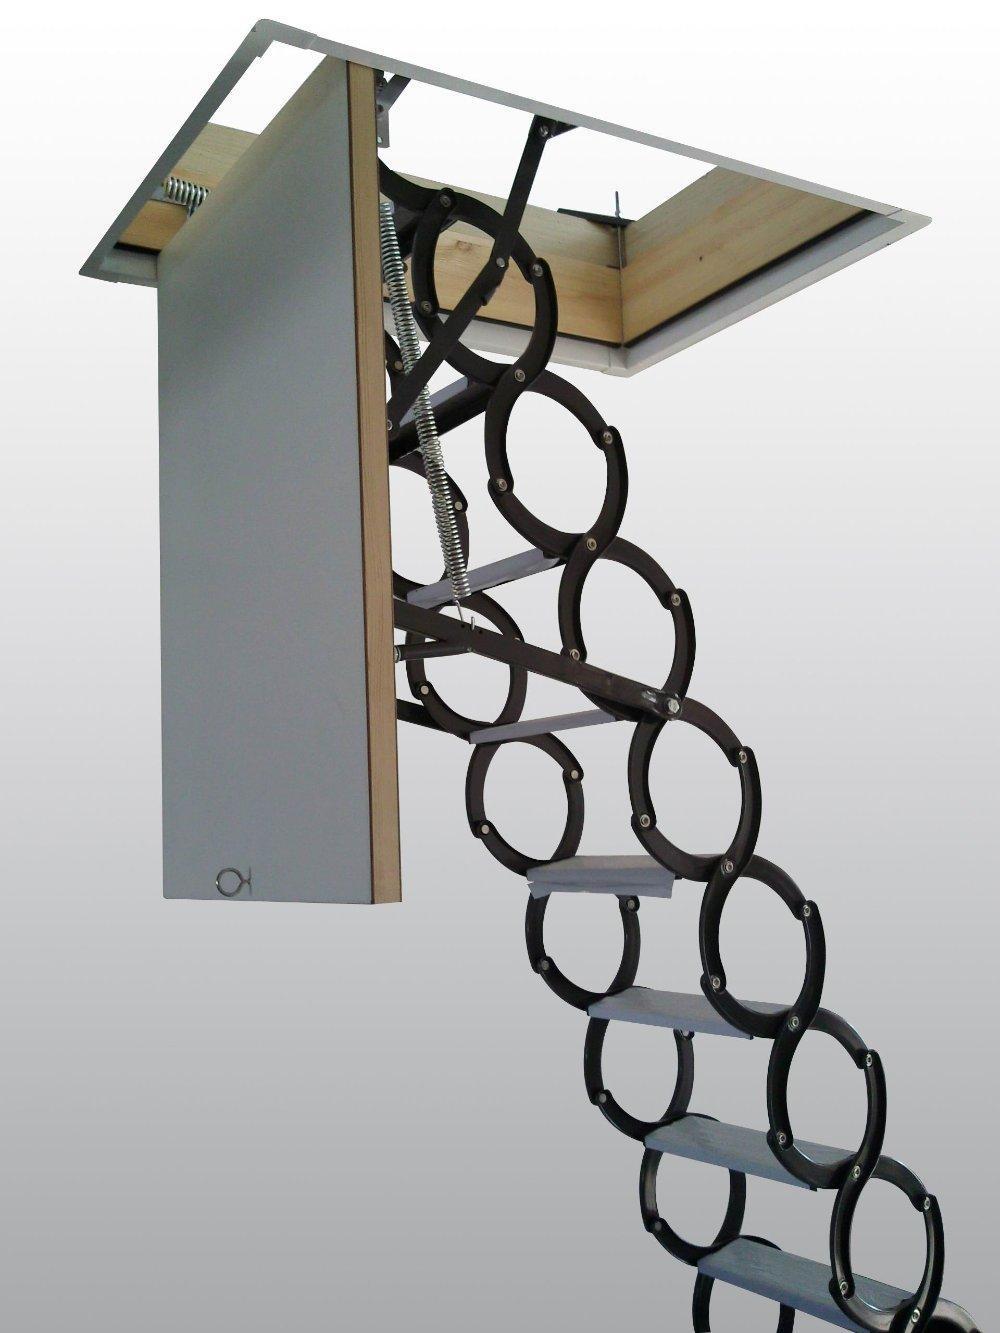 Складные чердачные лестницы с электроприводом удобны в использовании